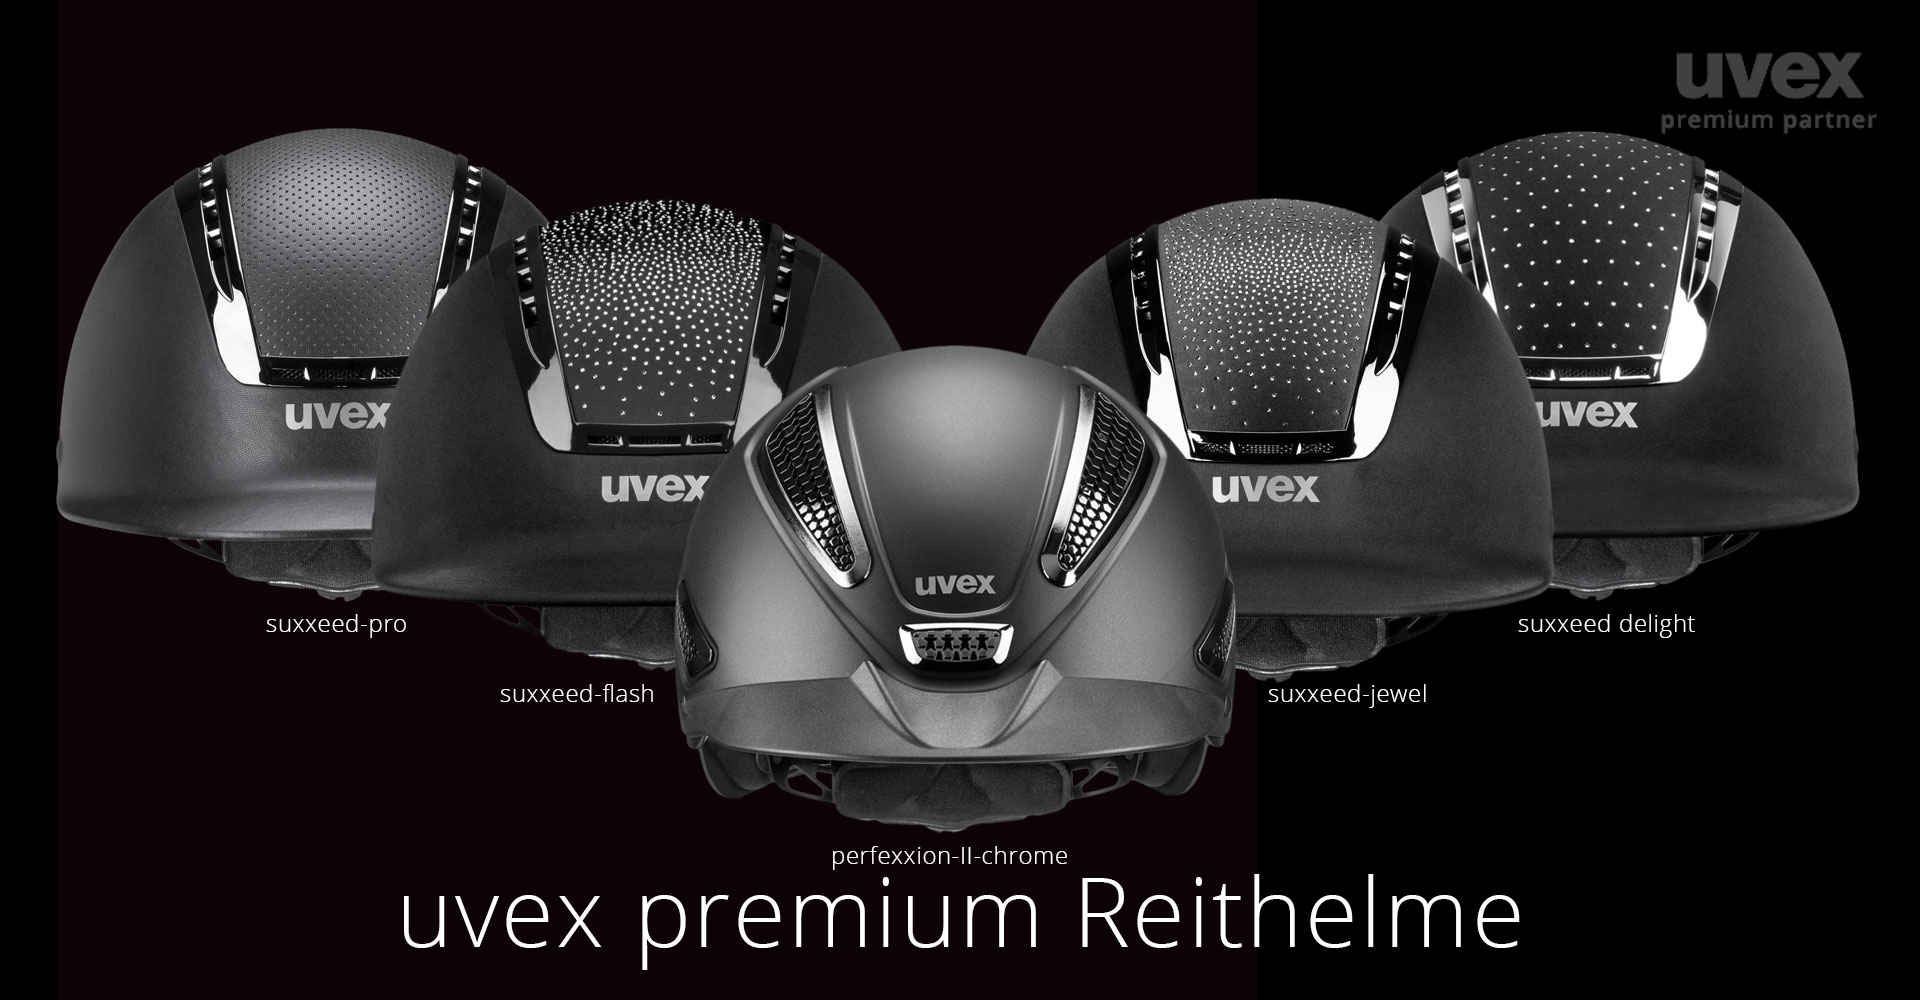 Fünf verschiedene Uvex Reithelm Modelle